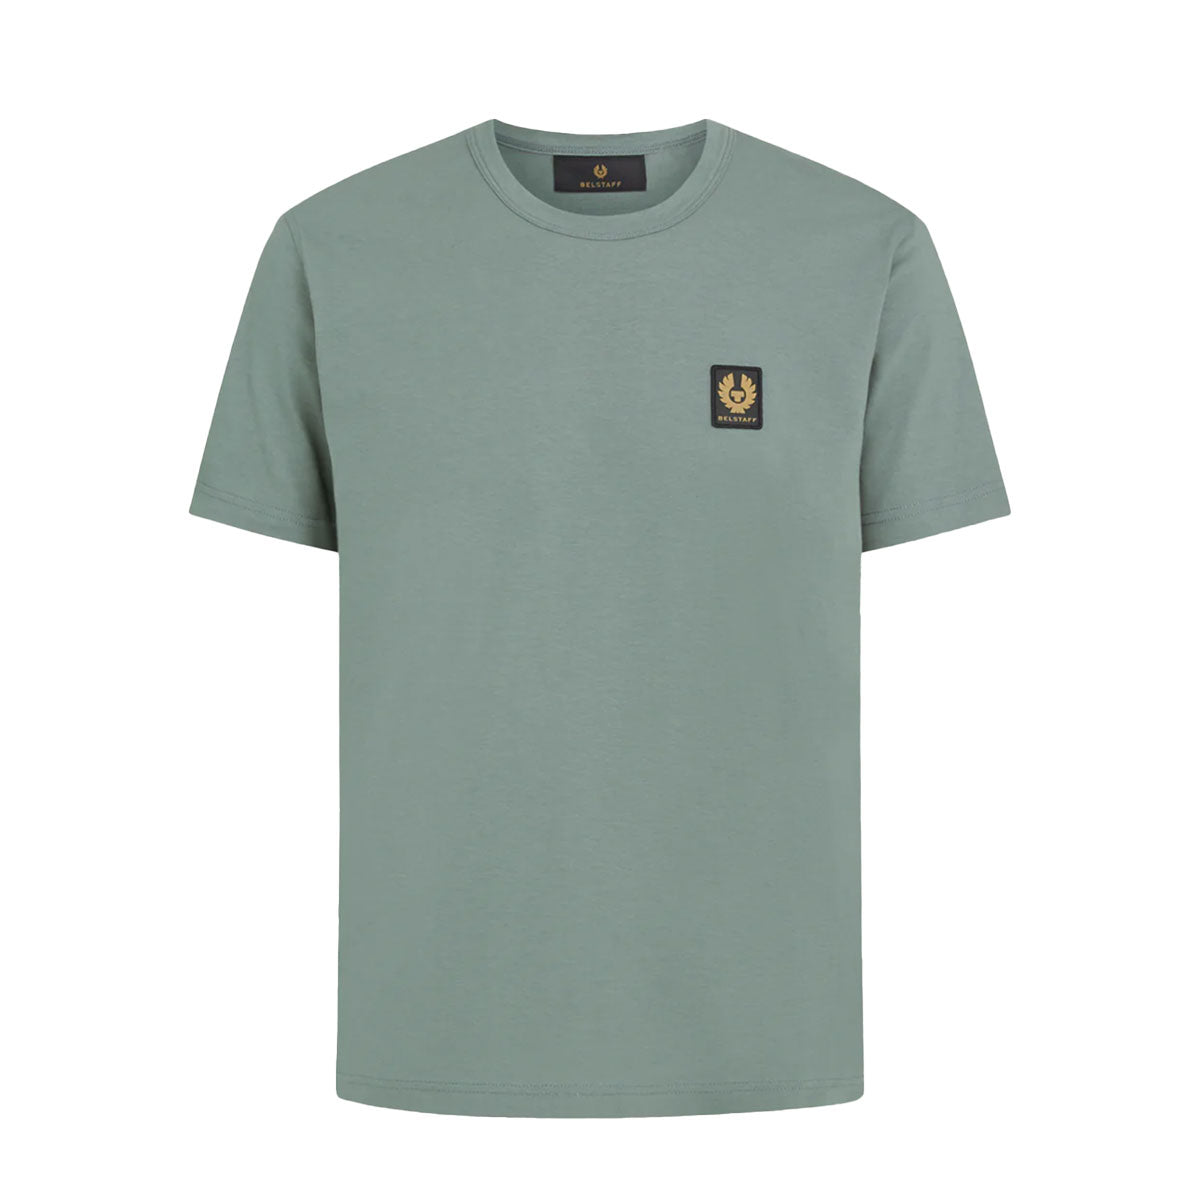 Mineral Green Jersey Cotton T-shirt TEE SHIRTS Belstaff   